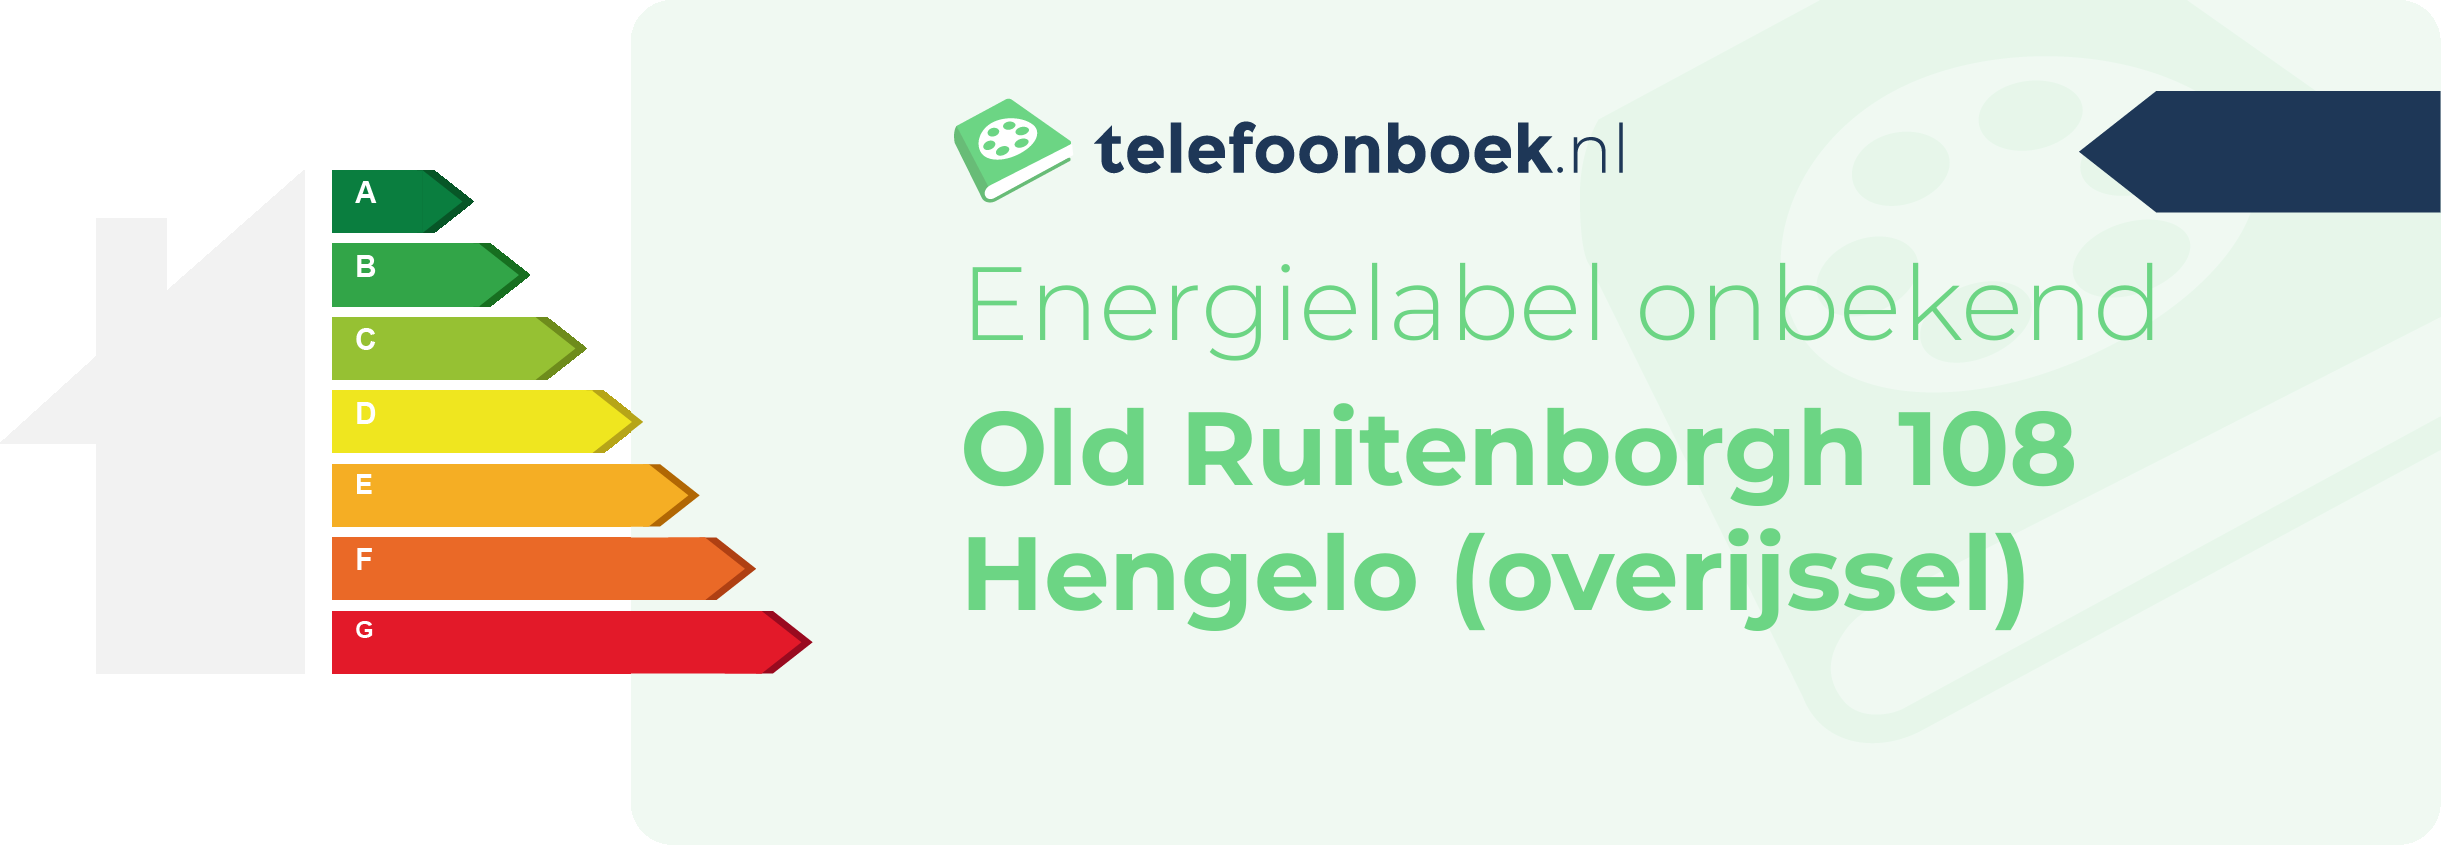 Energielabel Old Ruitenborgh 108 Hengelo (Overijssel)